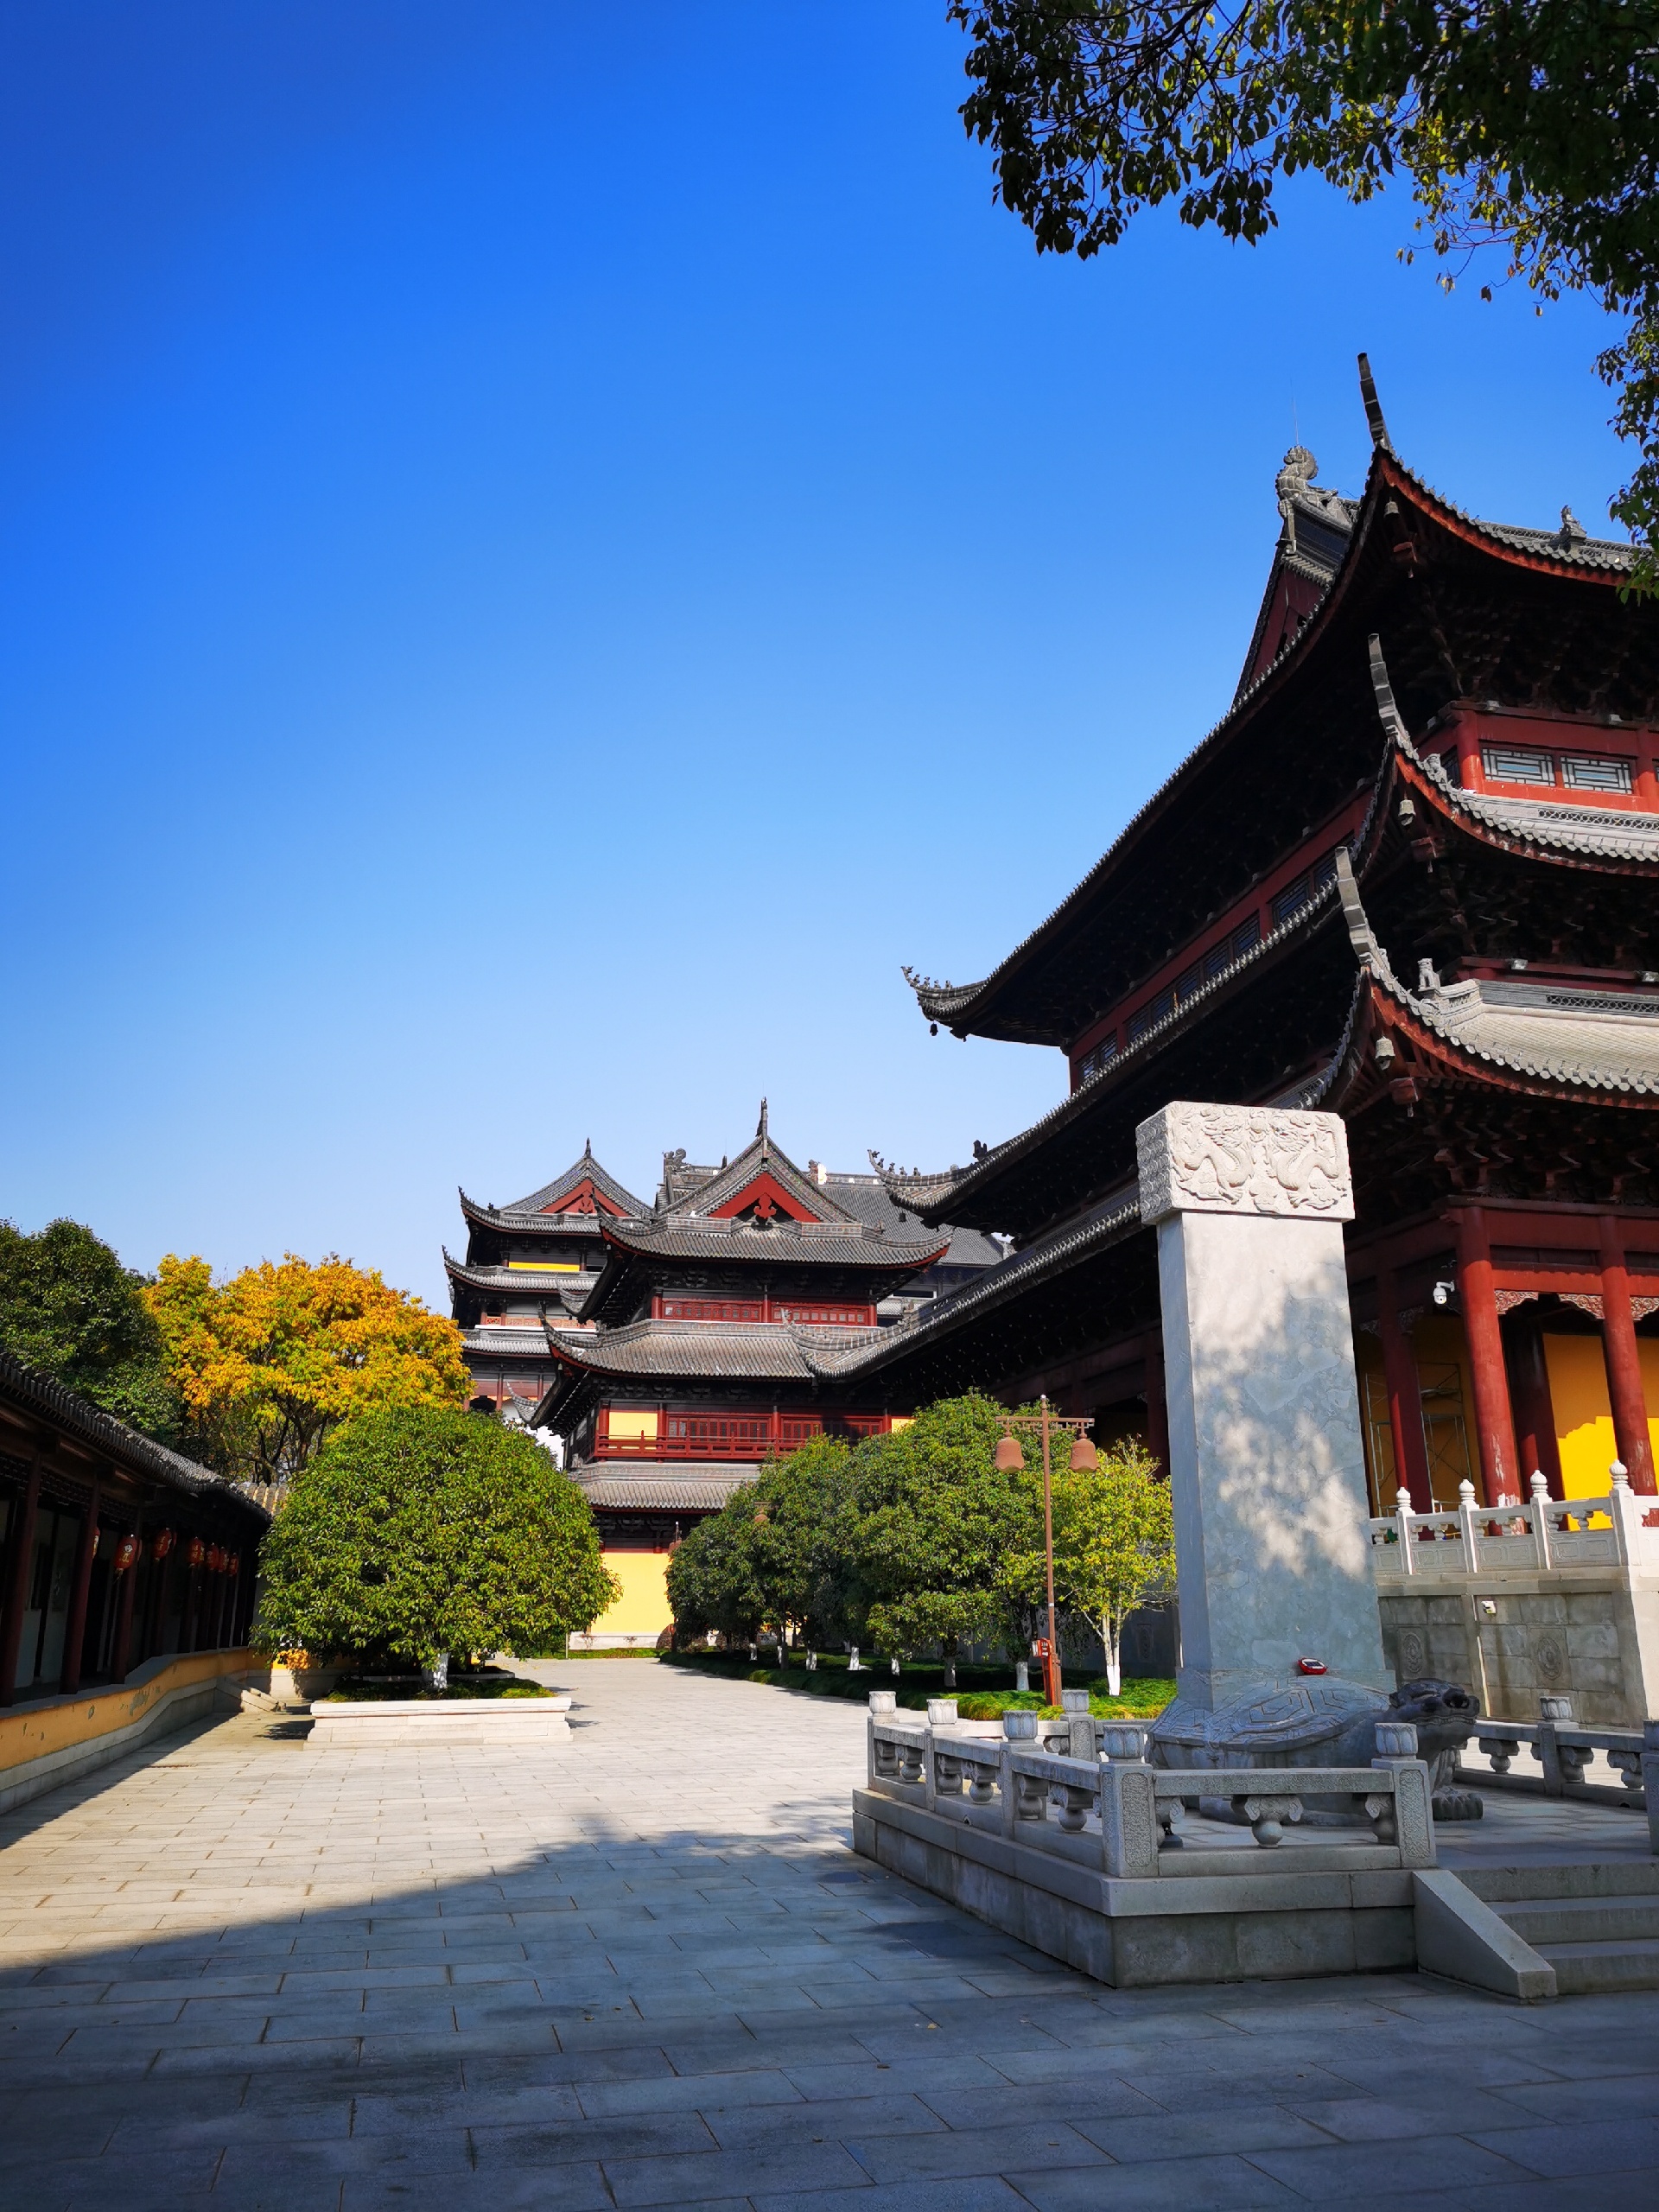 阳澄湖边的重元寺-寺庙规模壮观。值得一看。